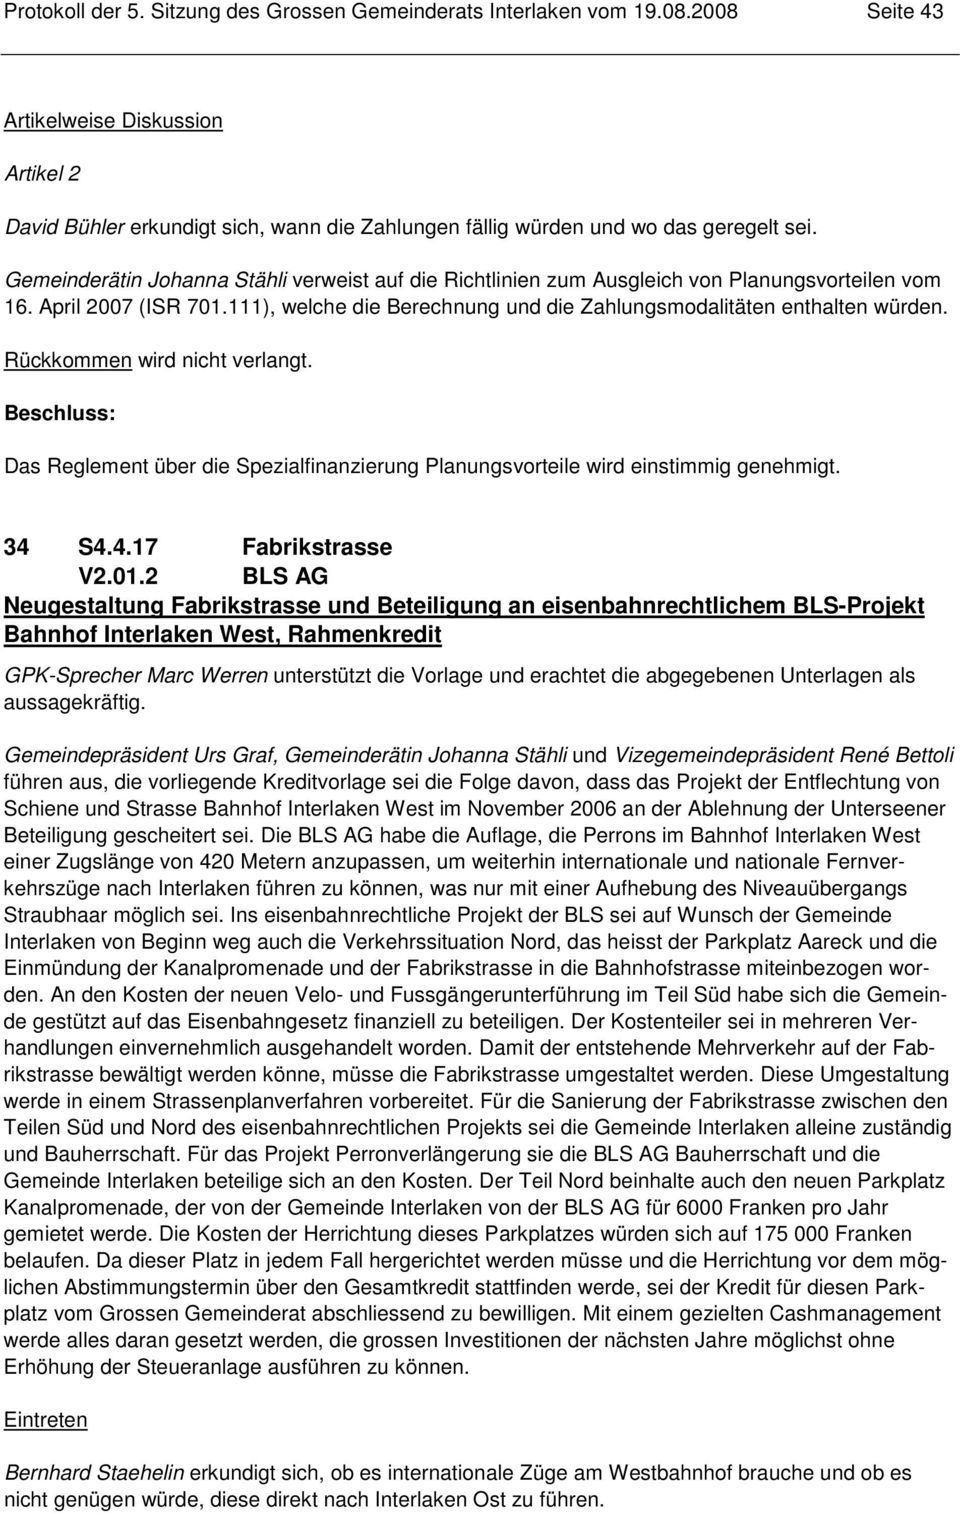 Gemeinderätin Johanna Stähli verweist auf die Richtlinien zum Ausgleich von Planungsvorteilen vom 16. April 2007 (ISR 701.111), welche die Berechnung und die Zahlungsmodalitäten enthalten würden.